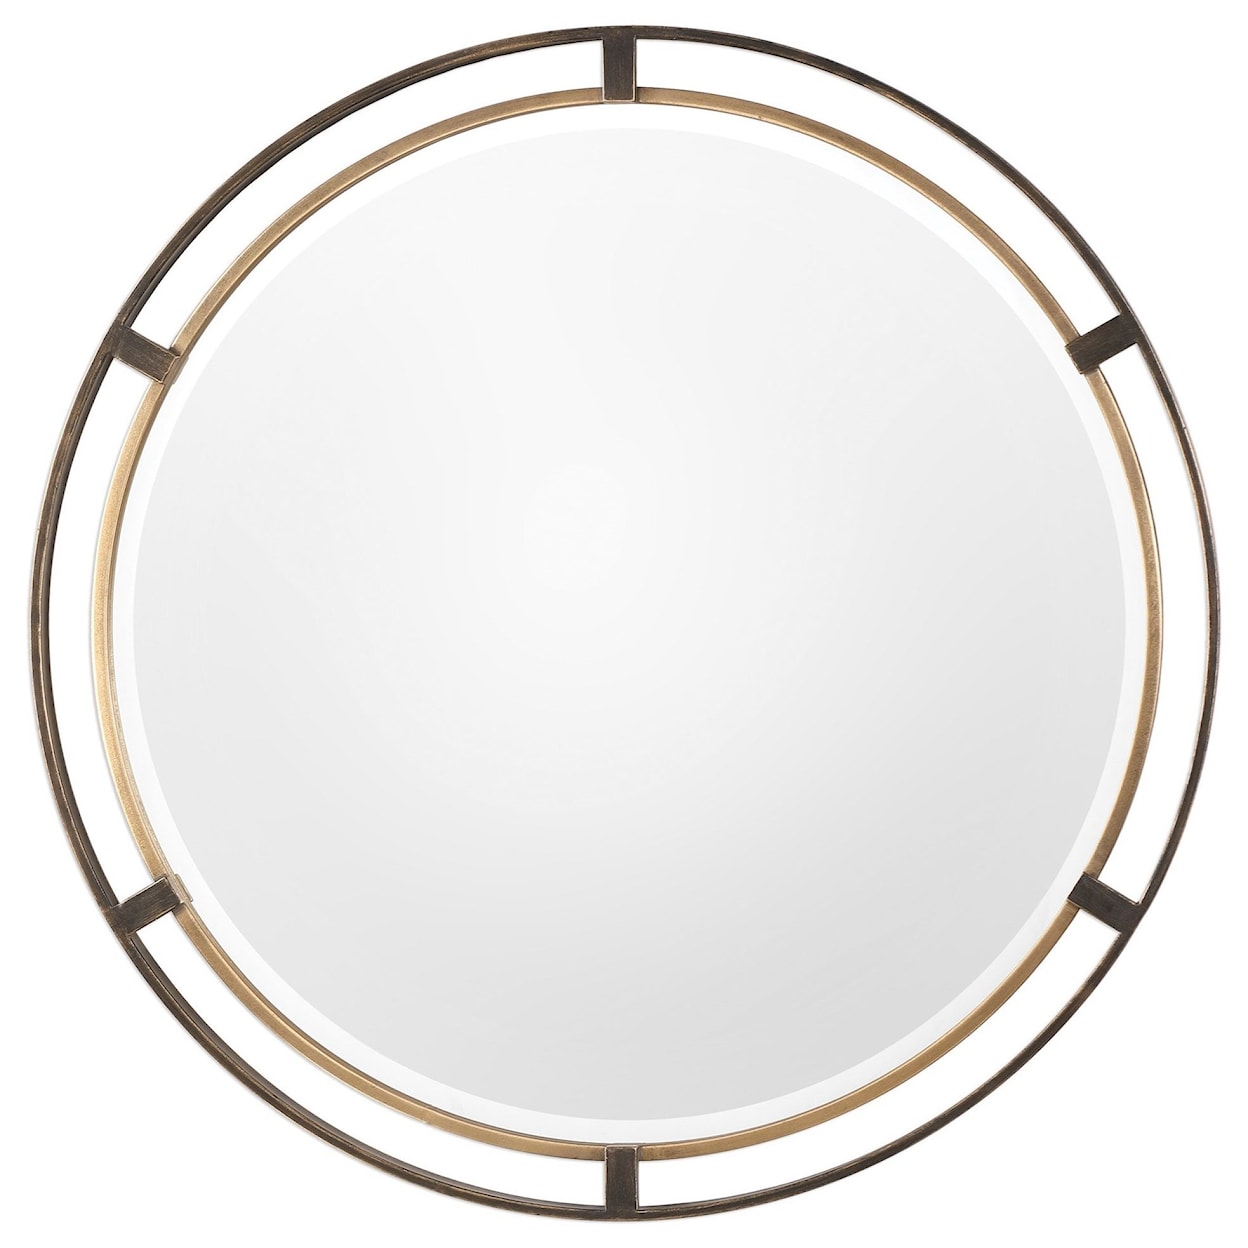 Uttermost Mirrors - Round Carrizo Bronze Round Mirror